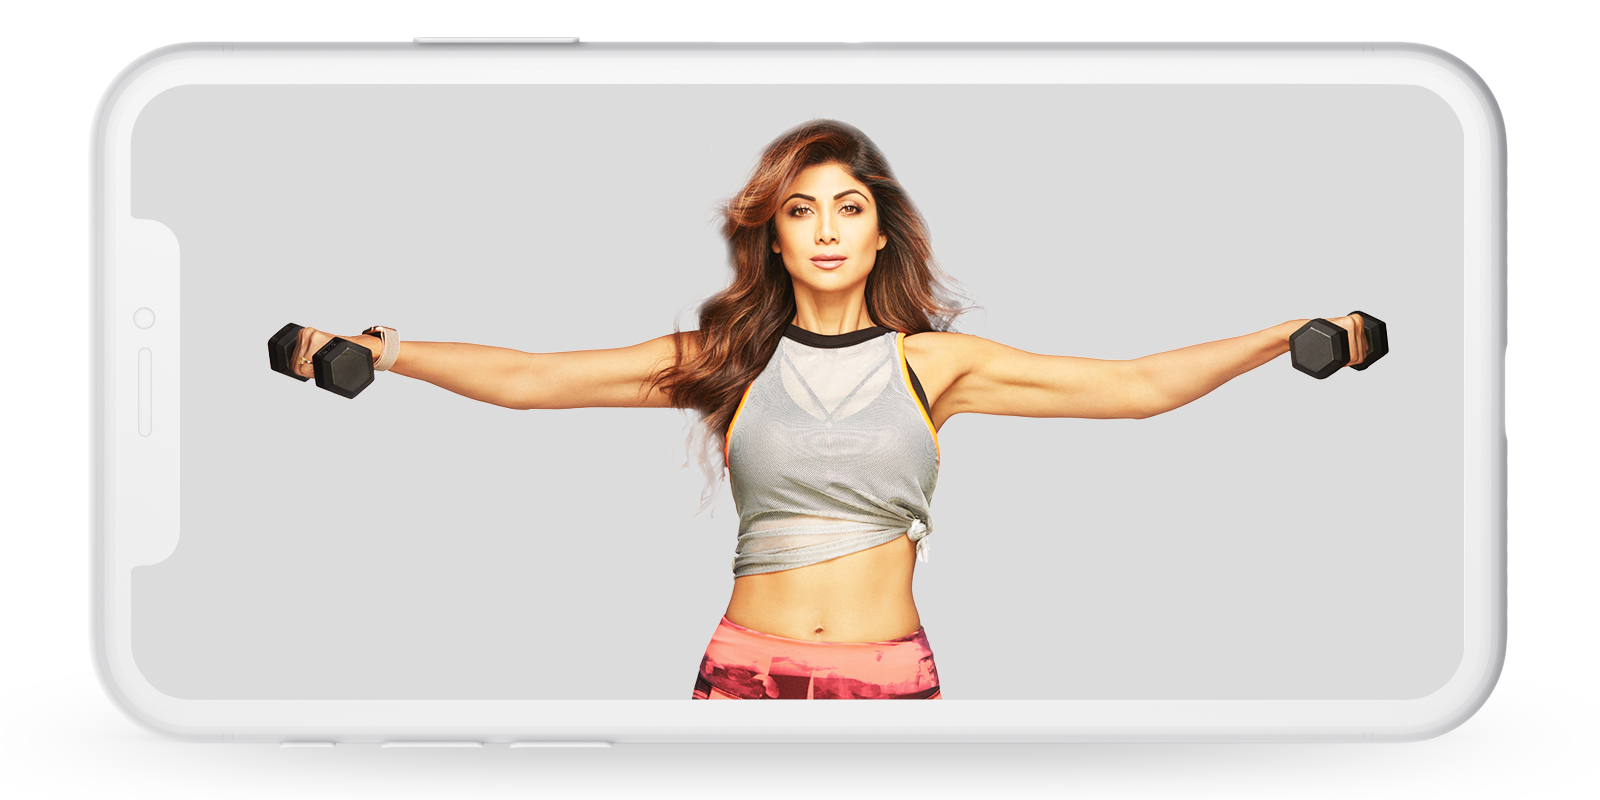 1600px x 800px - Shilpa Shetty Fitness App| Yoga Body, Mind, Nutrition & Diet